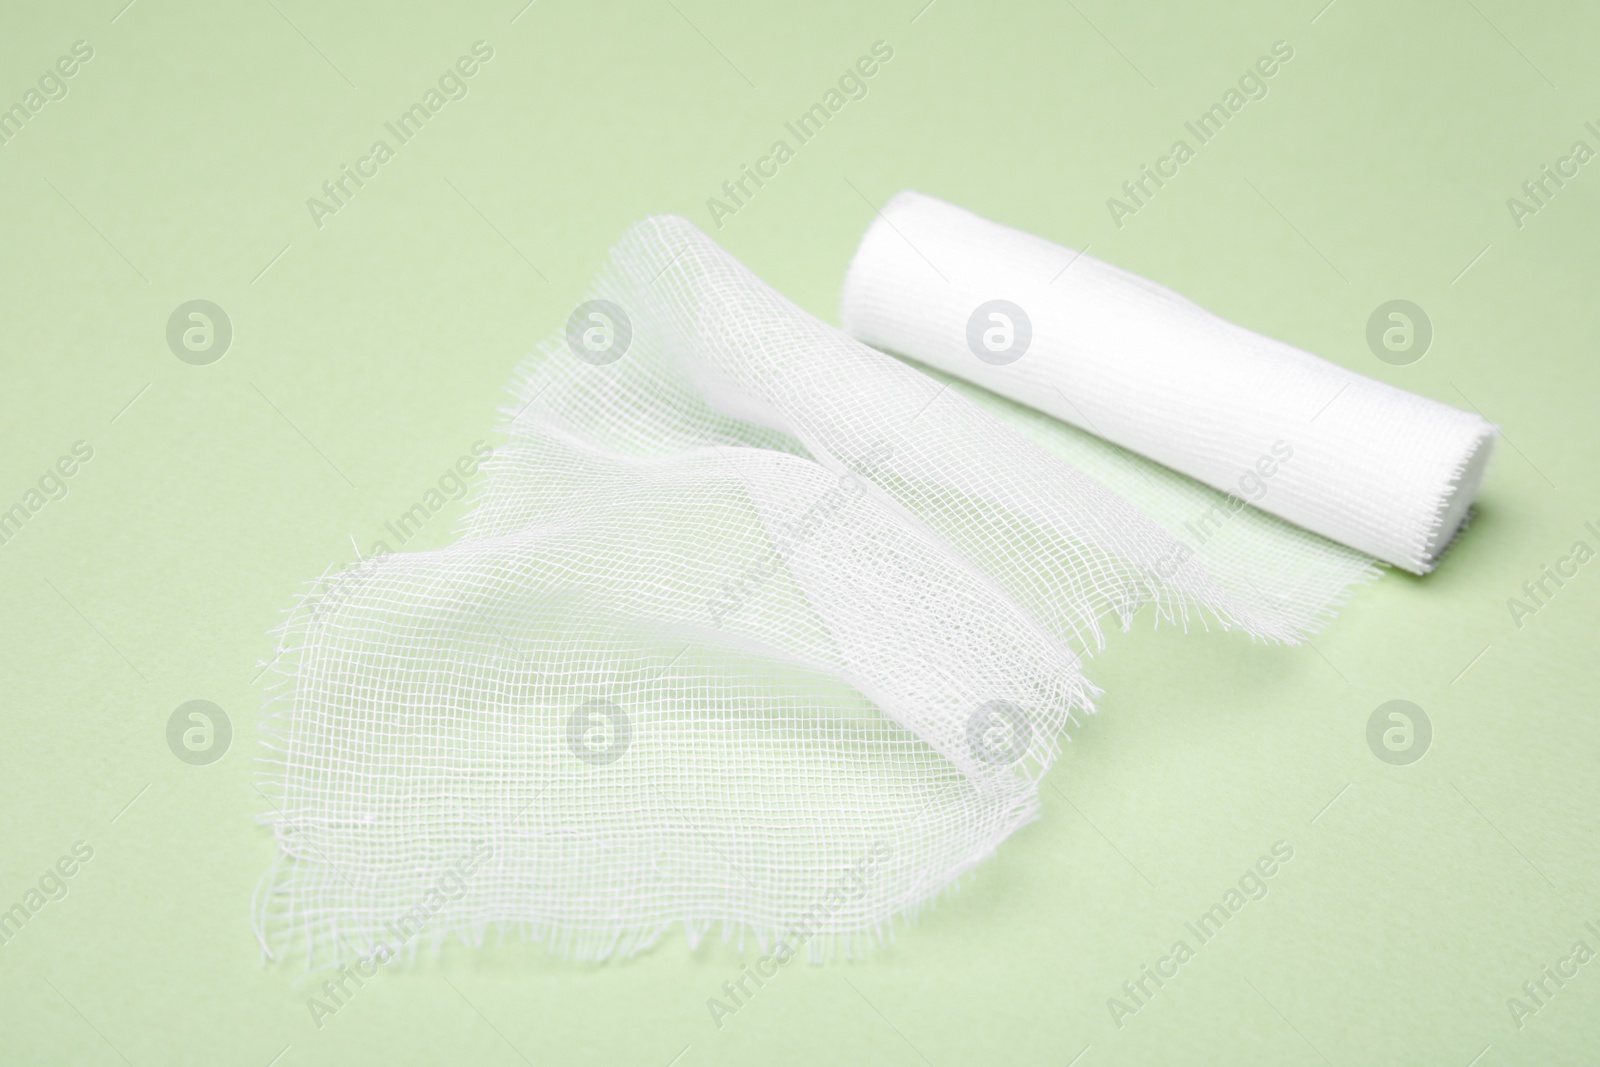 Photo of White medical bandage on light green background